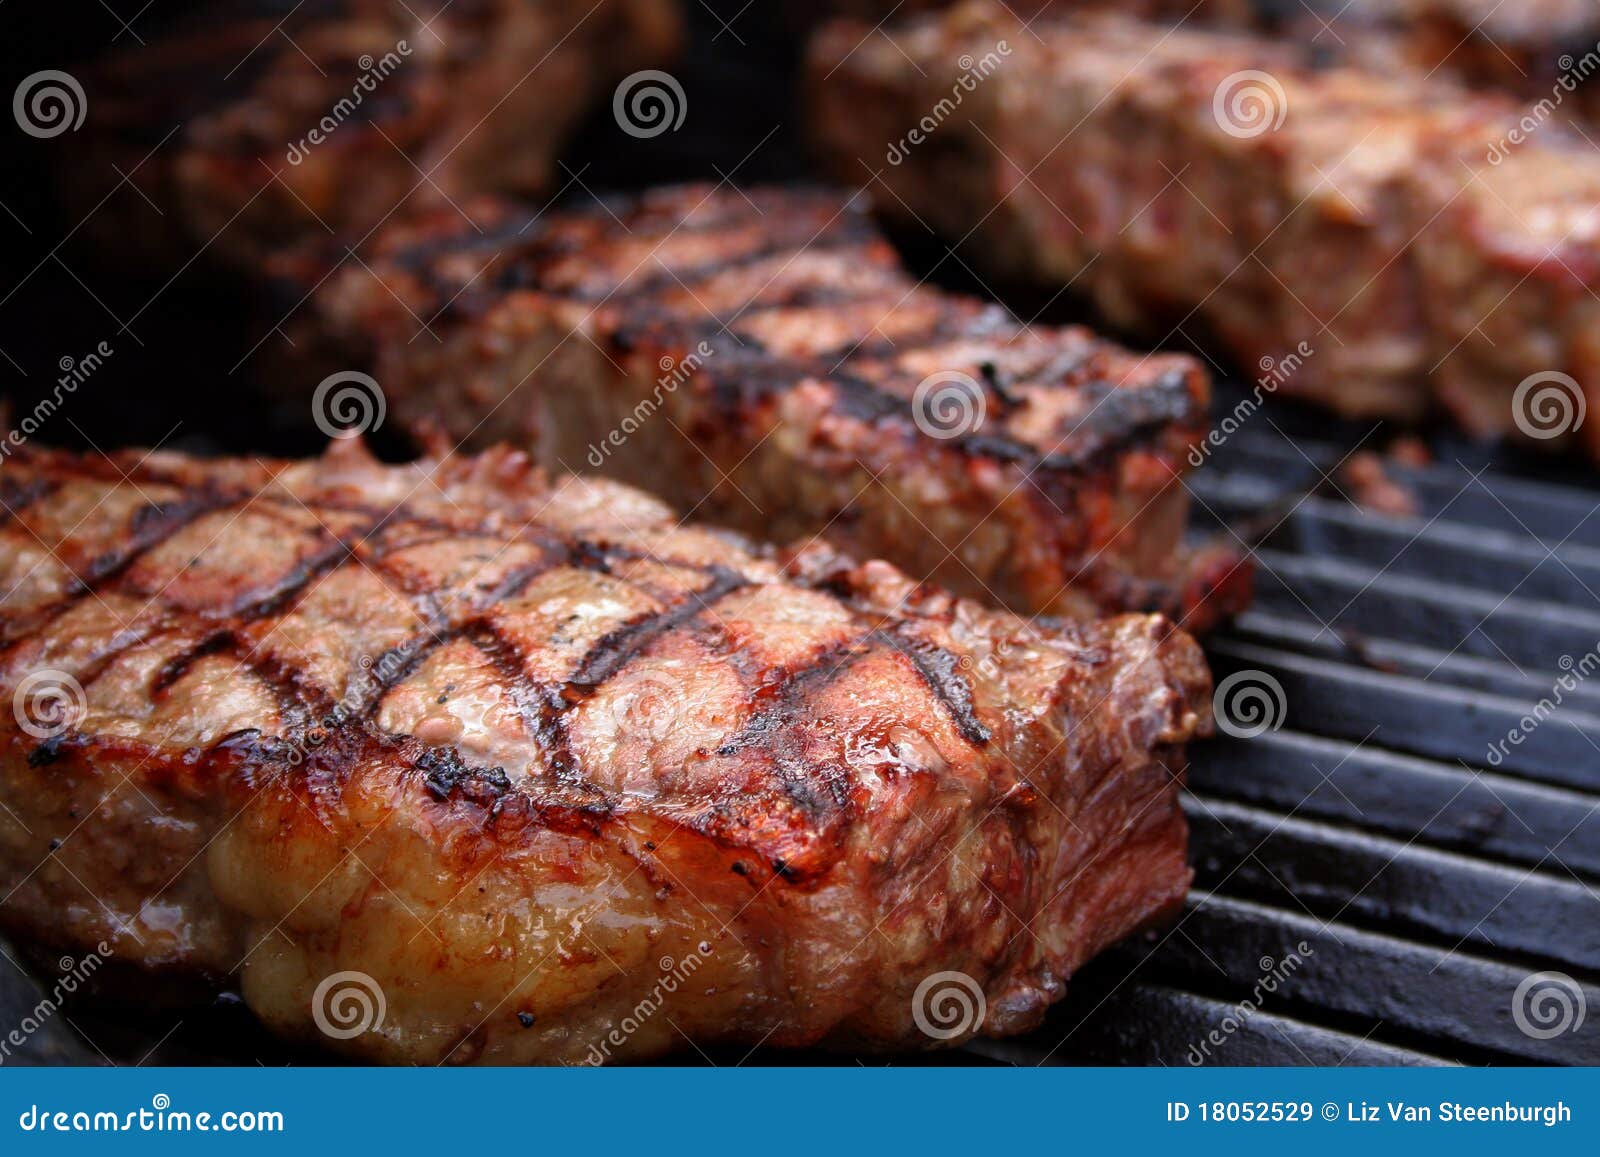 barbecued steaks